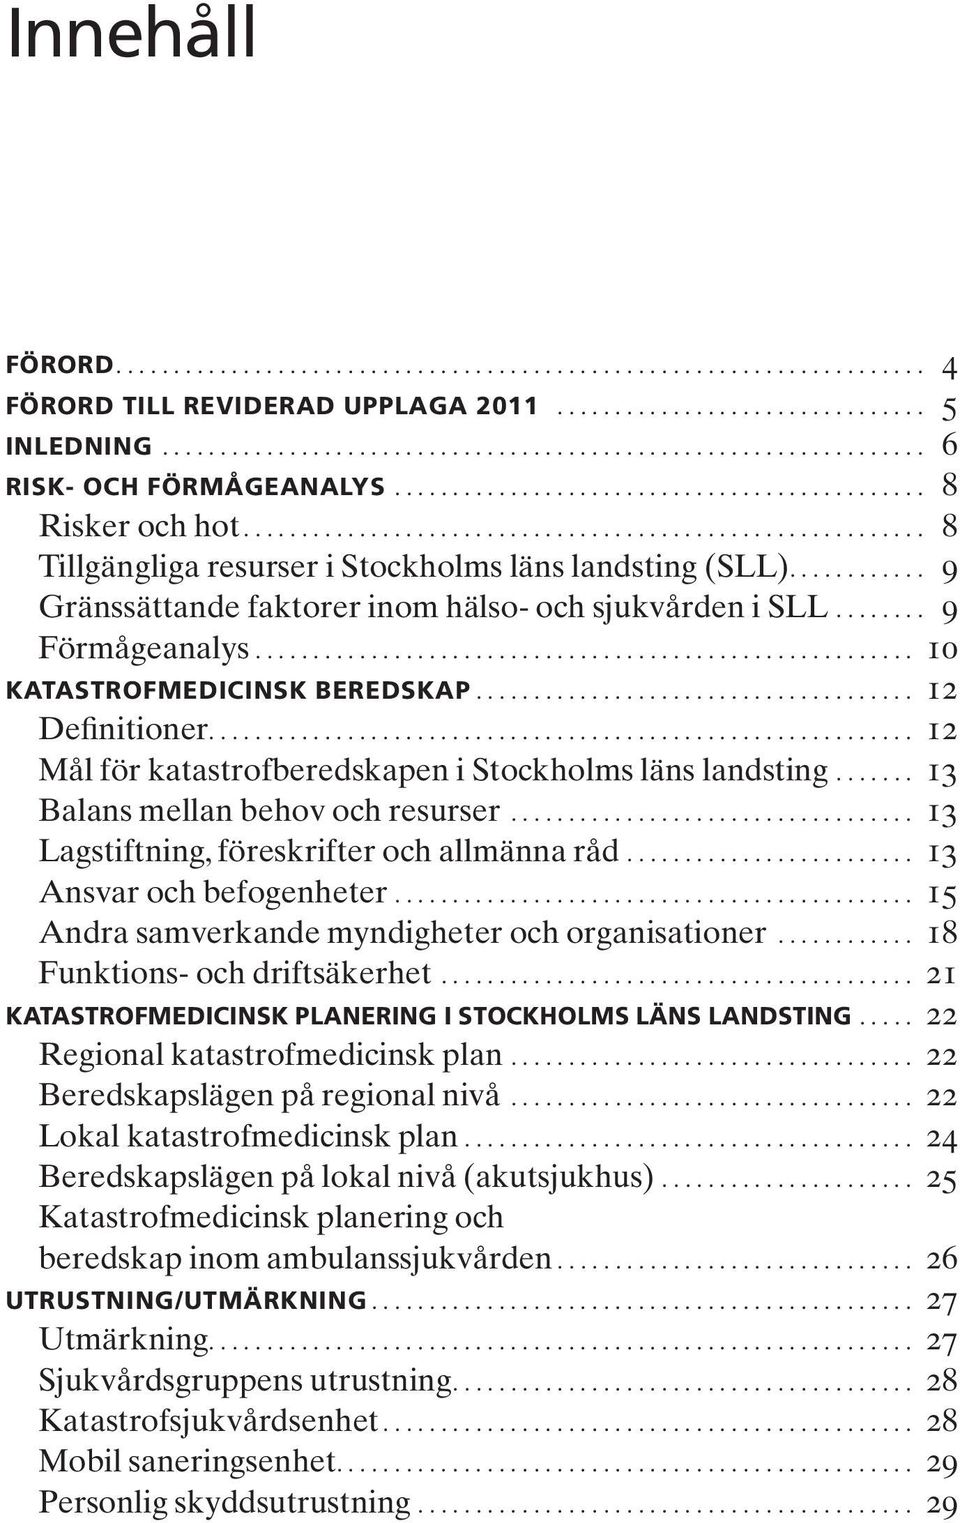 ... 12 Mål för katastrofberedskapen i Stockholms läns landsting... 13 Balans mellan behov och resurser... 13 Lagstiftning, föreskrifter och allmänna råd... 13 Ansvar och befogenheter.